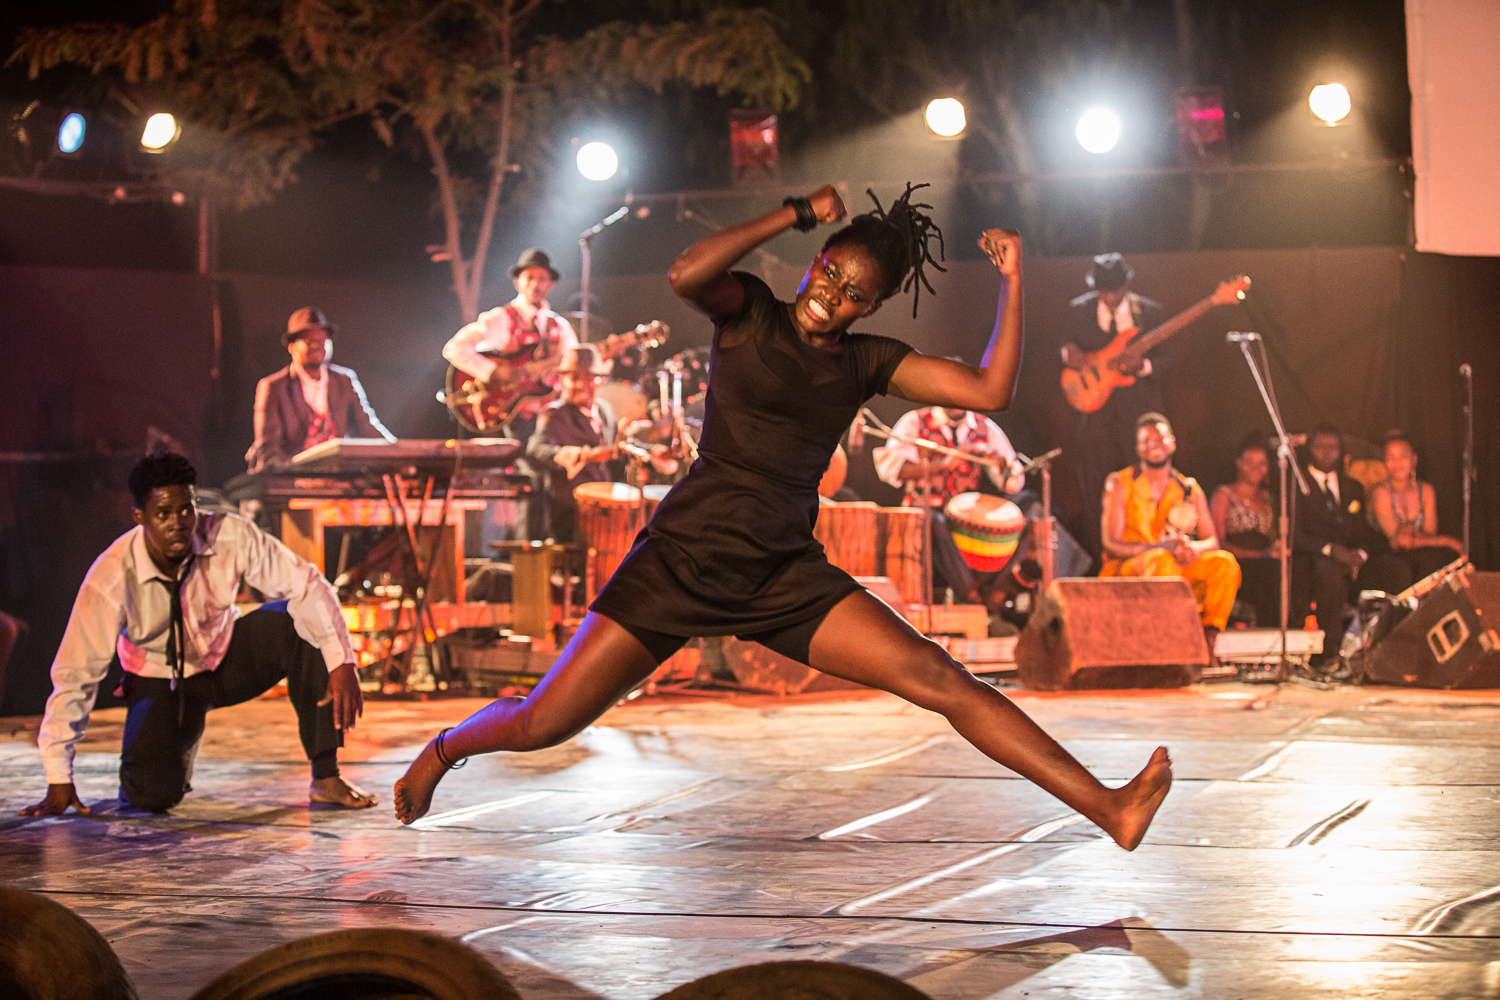 Danse l’Afrique danse : la danse contemporaine au cœur des mutations